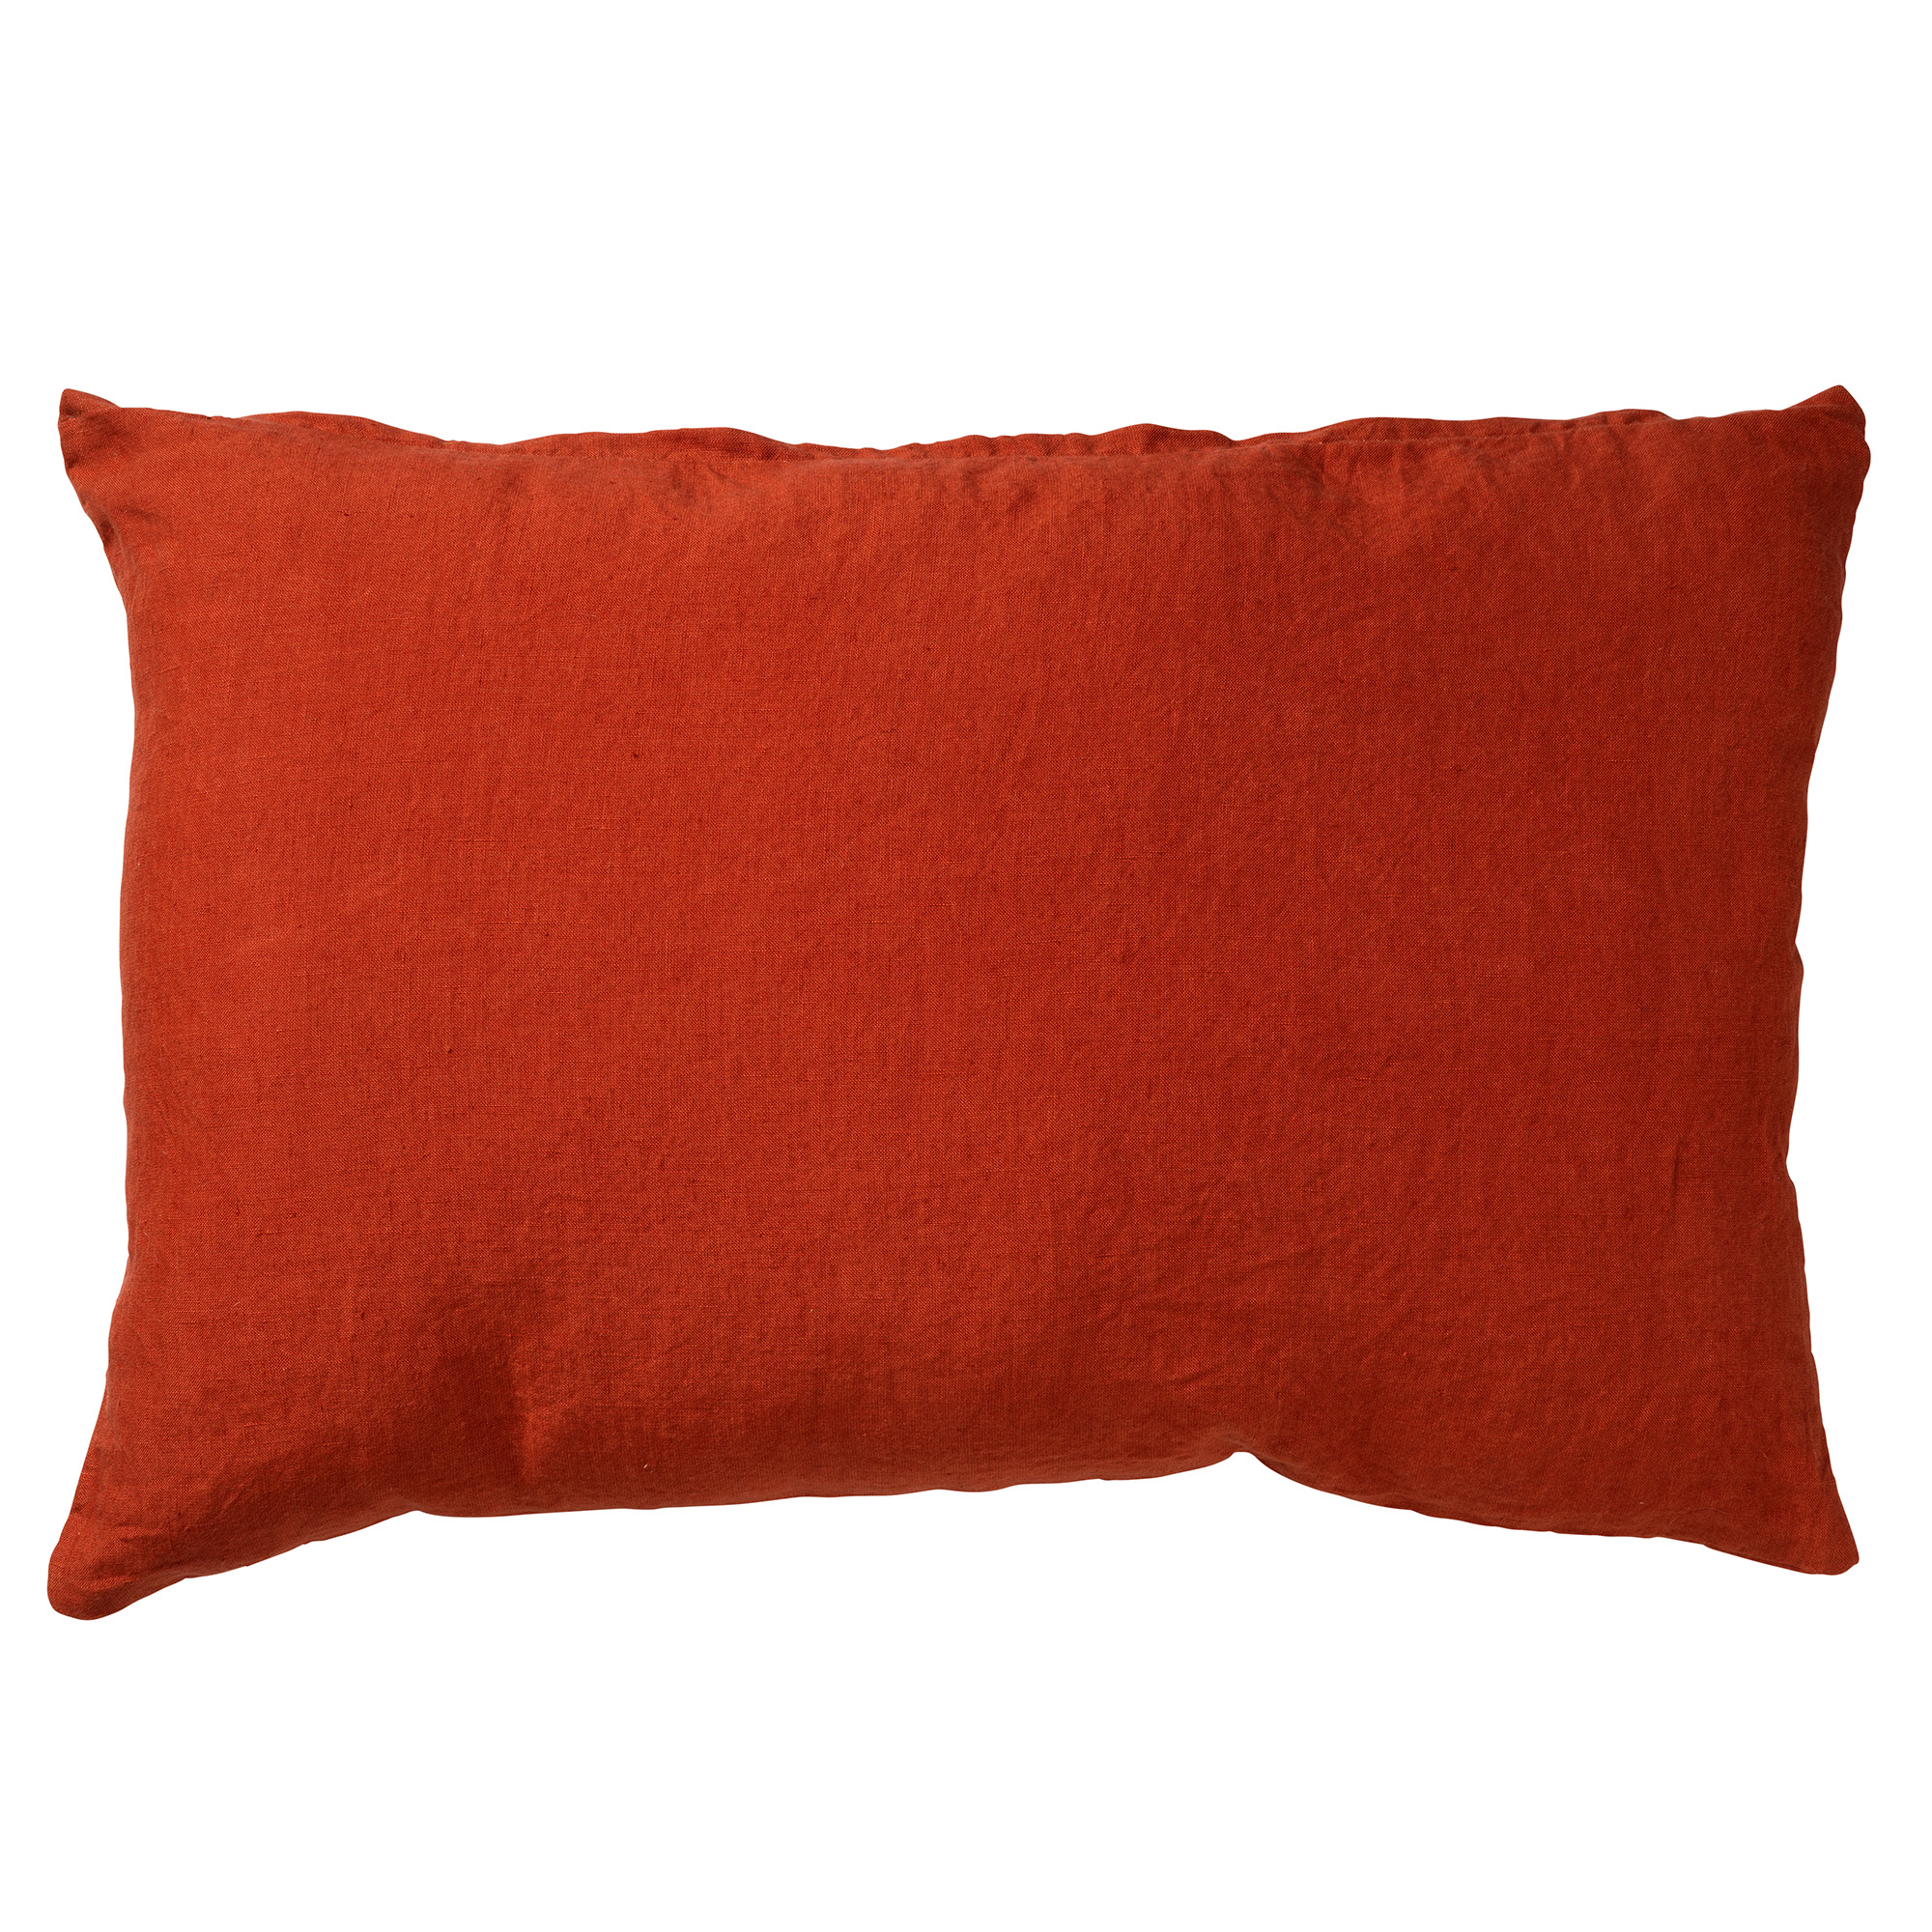 LINN - Kussenhoes 40x60 cm - 100% linnen - Potters Clay - oranje